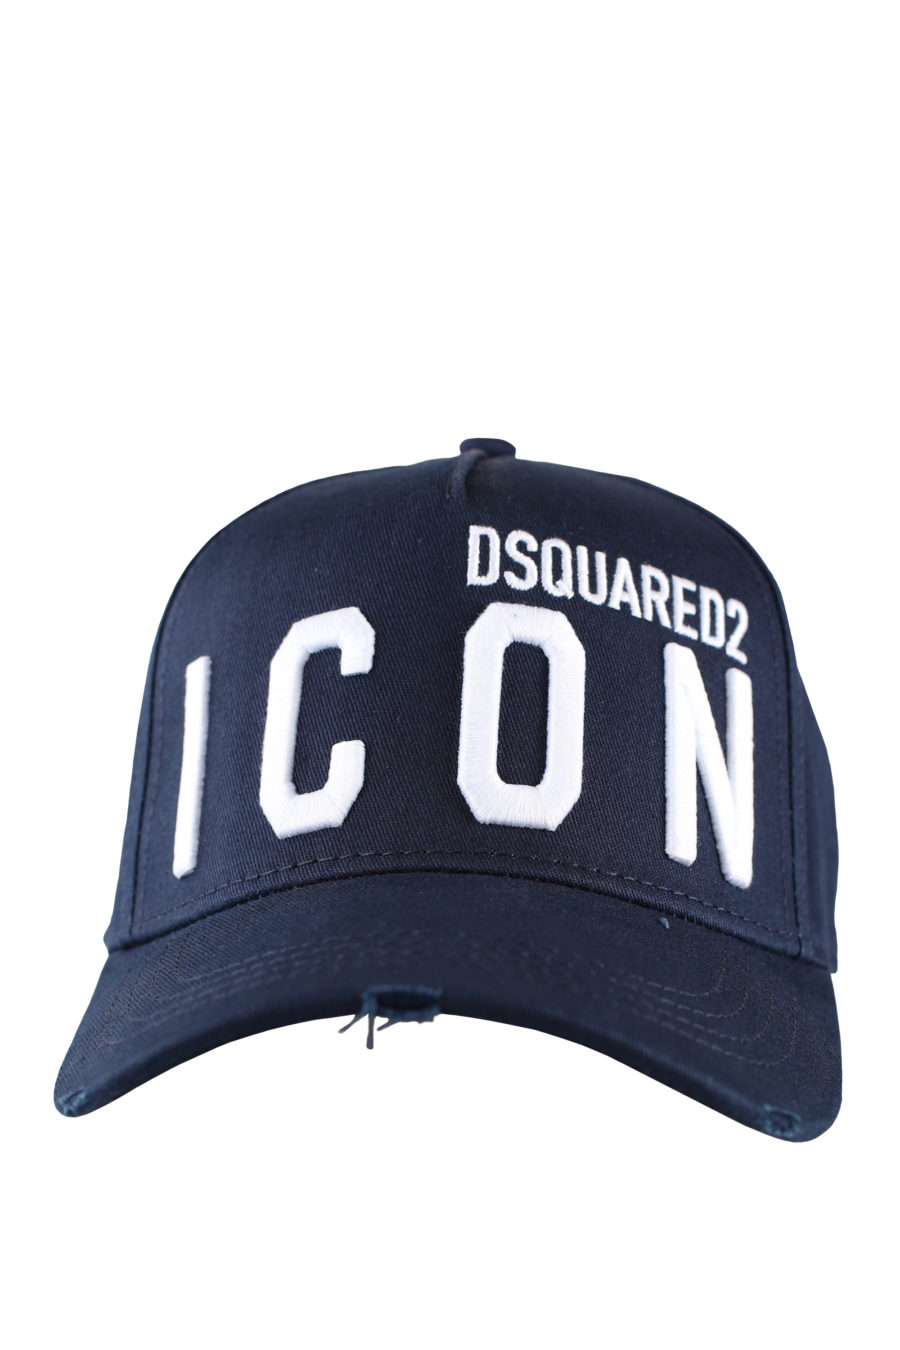 Gorra azul ajustable con logo "icon" blanco - IMG 0001